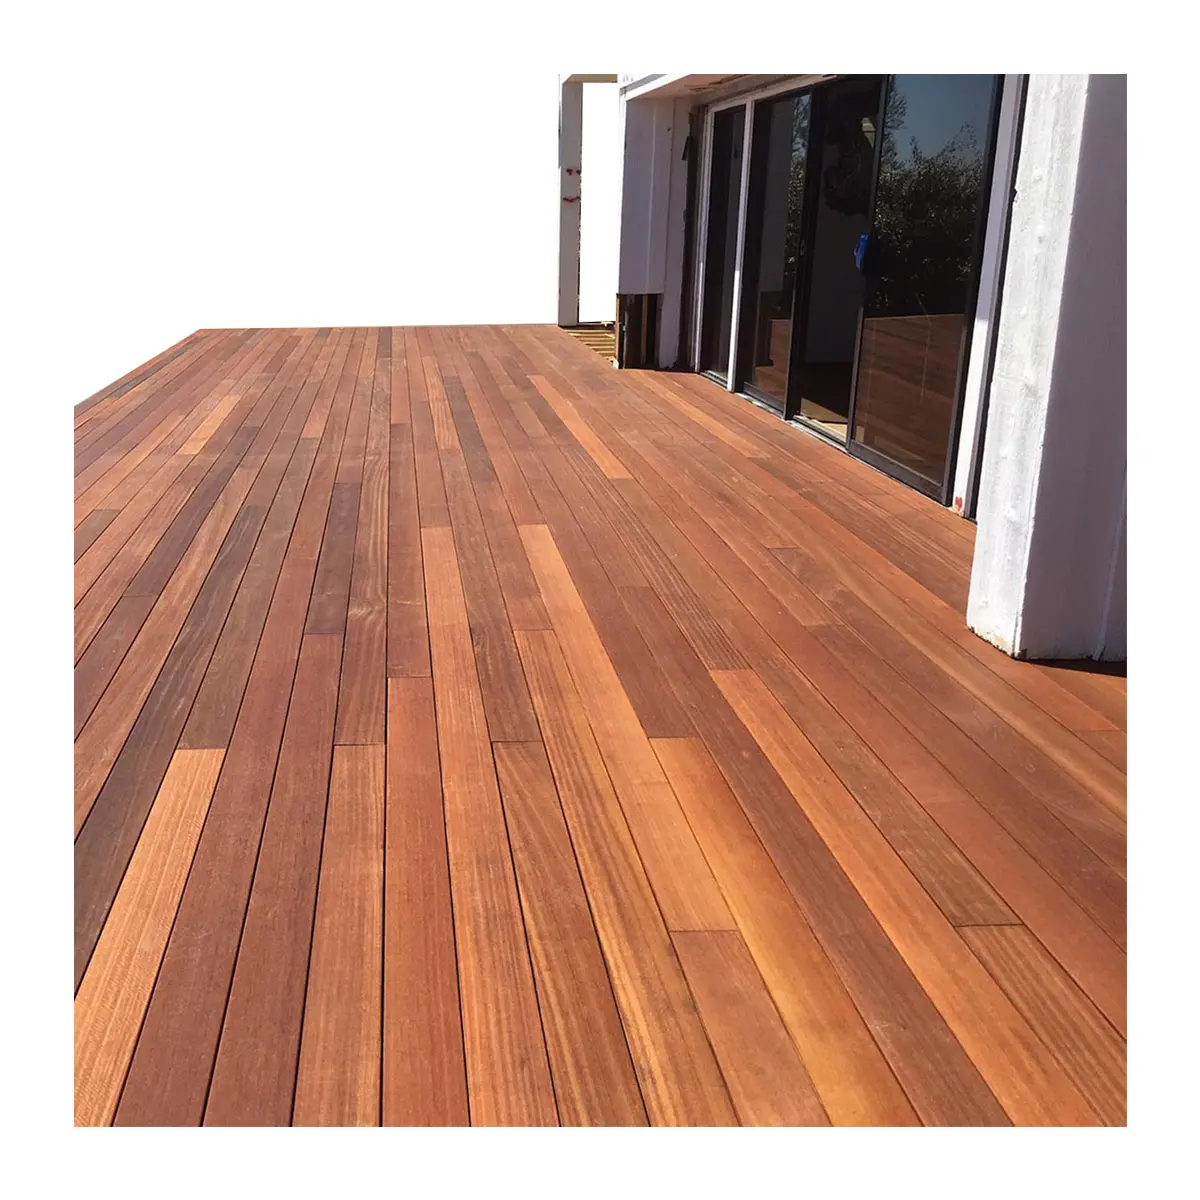 Cubierta de madera de calidad confiable Balau Decking 18Mm X 140Mm Estabilidad excelente excepcional y duradera para muebles tradicionales